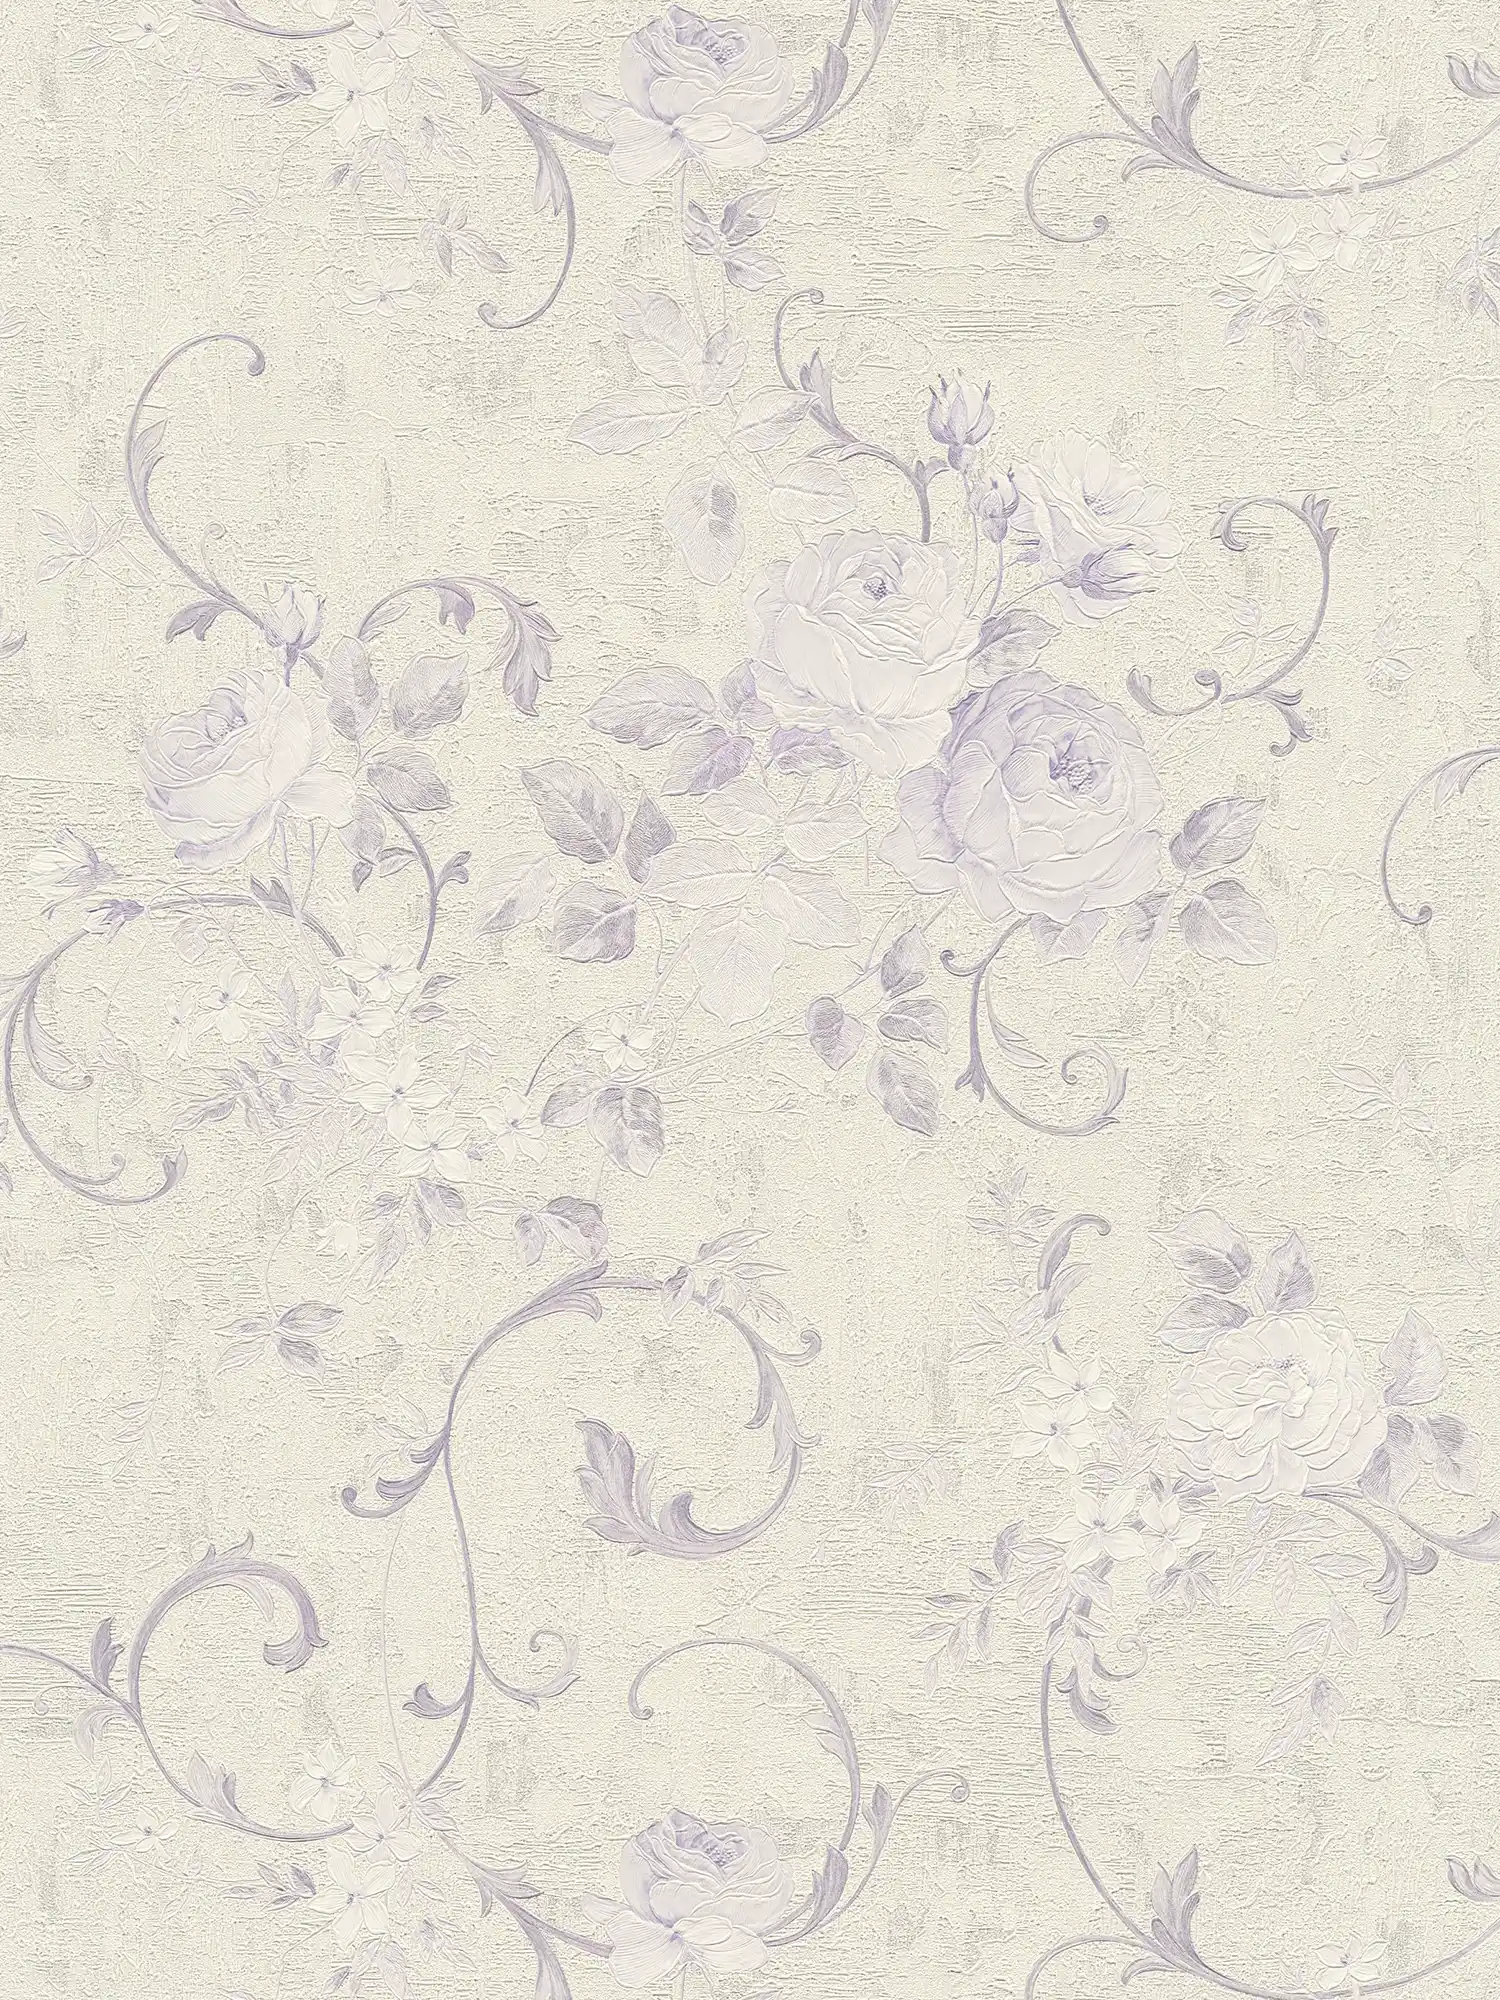 behang rozenpatroon & bladranken - crème, metallic, paars
